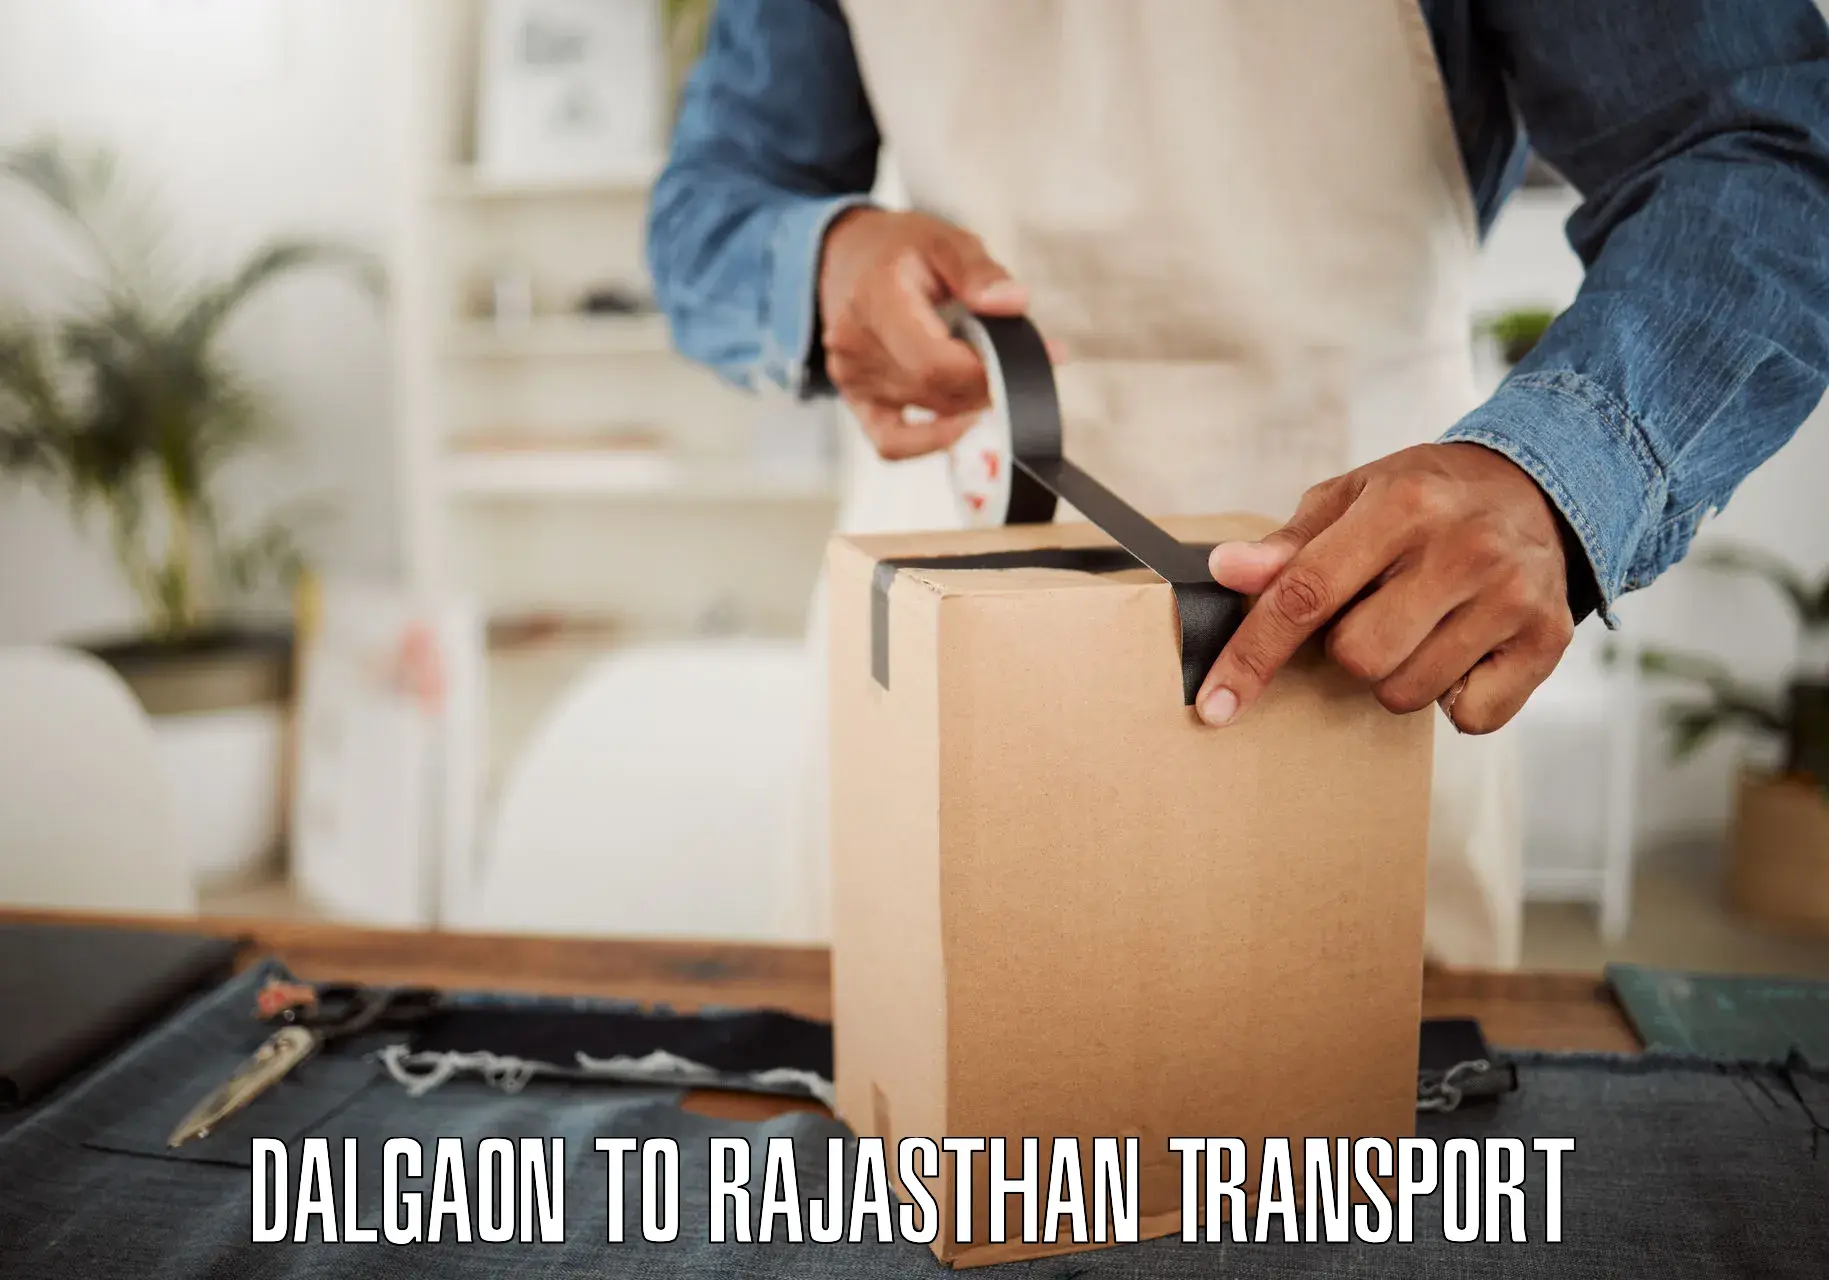 Two wheeler parcel service Dalgaon to Banswara